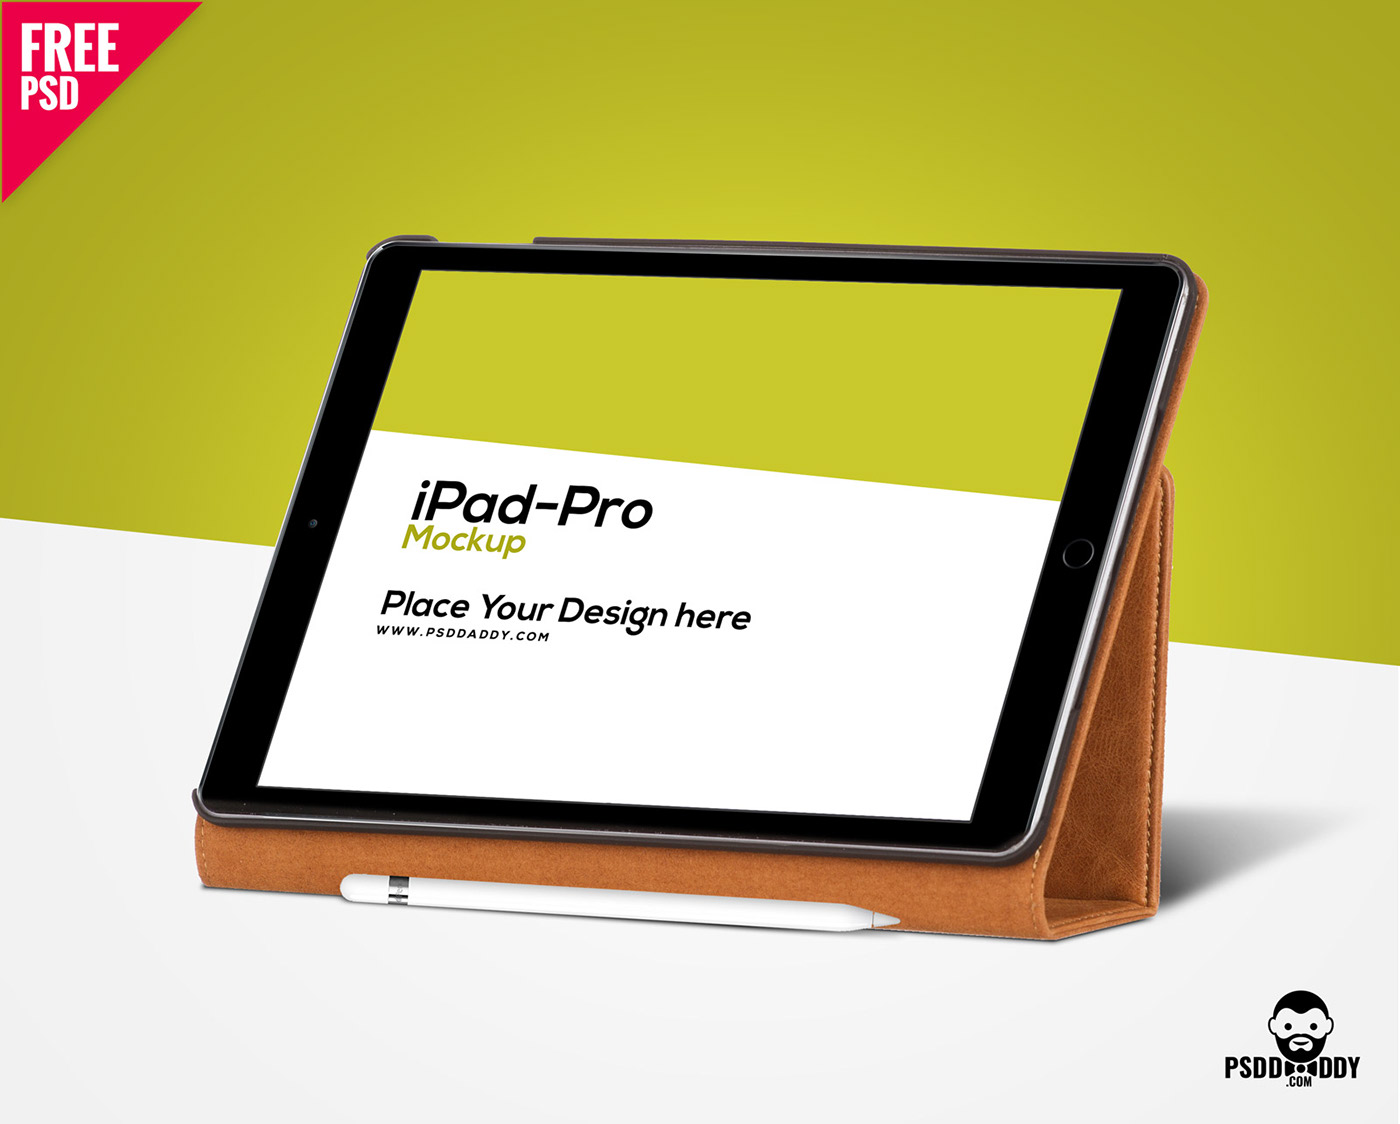 free psd Mockup freebie download ipad pro tablet Ipad Mockup apple free download